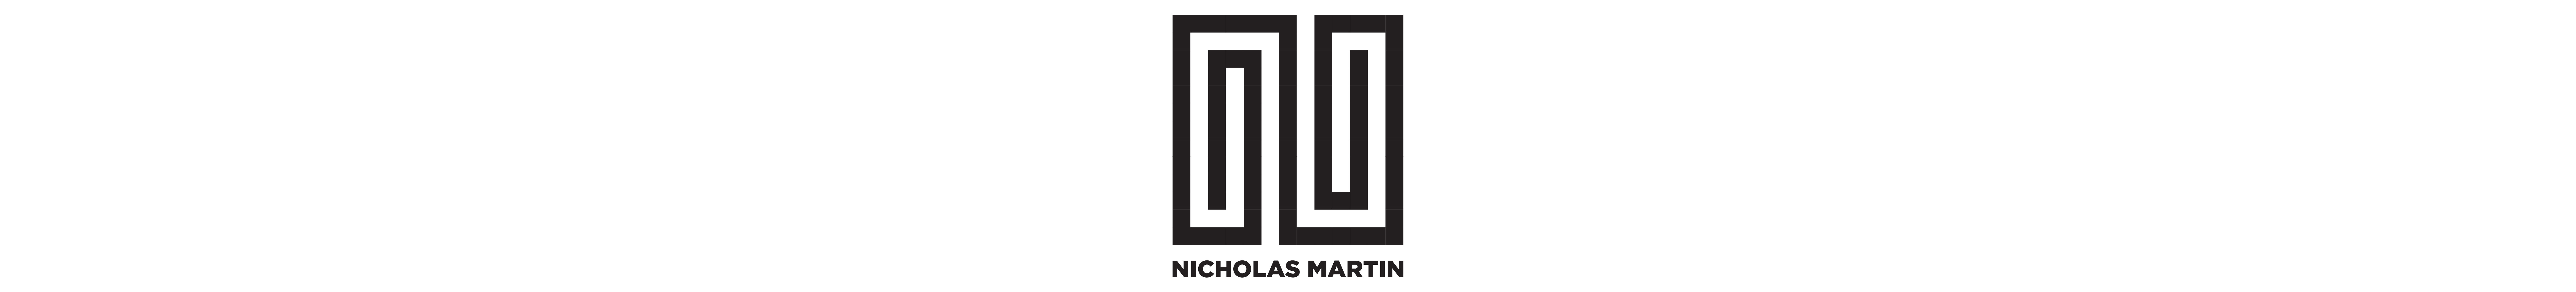 Profil-Banner von Nicholas Martin